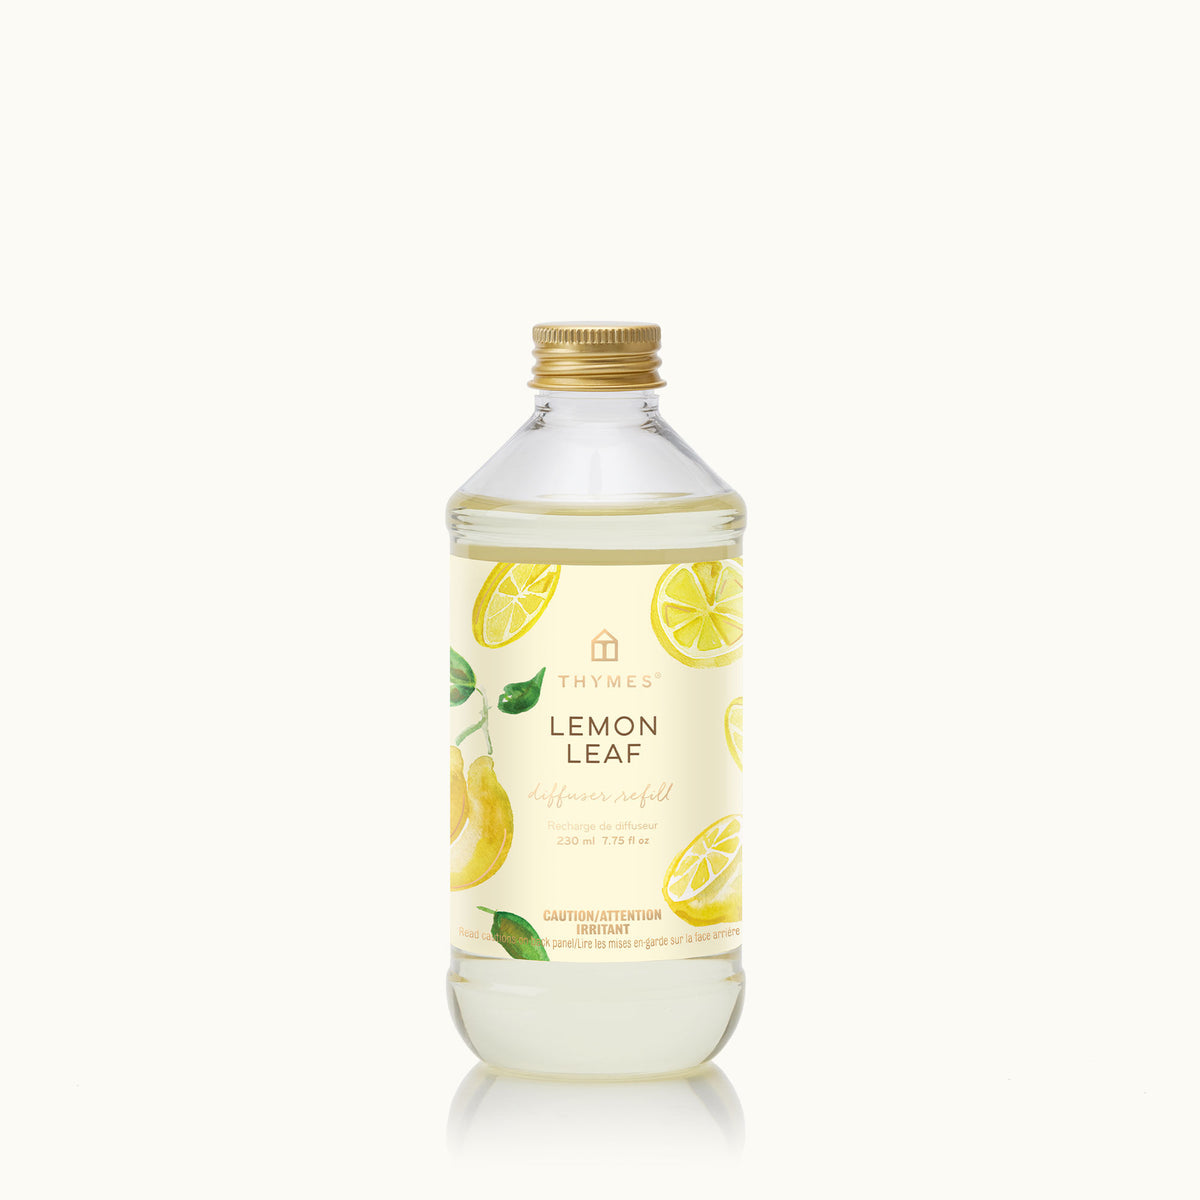 Thymes Lemon Leaf Reed Diffuser Refill230ml 7.75 fl oz